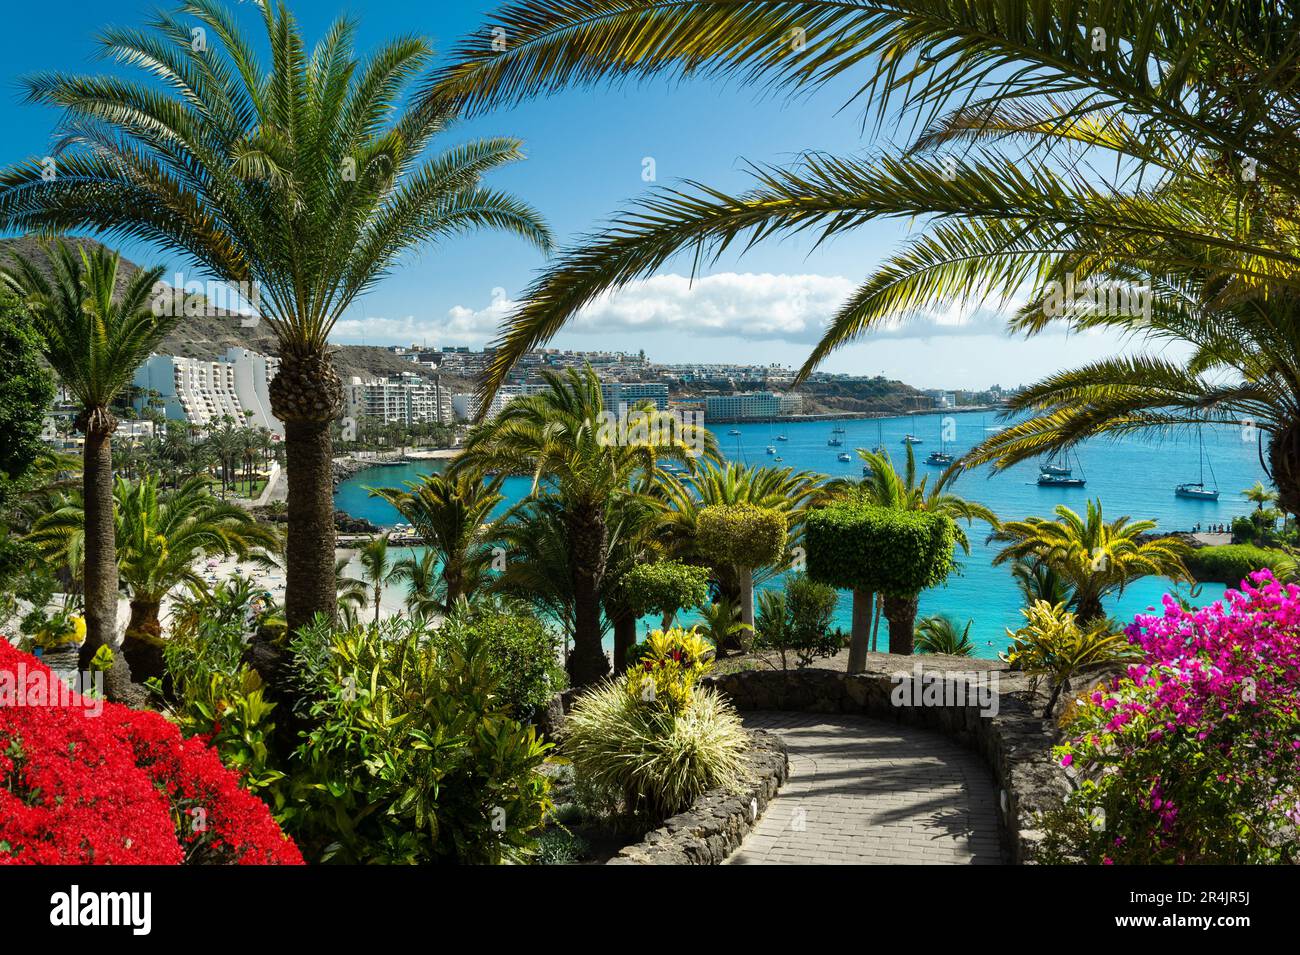 Vista di un bel giardino pubblico con palme tropicali e fiori rossi sopra la costa blu dell'Oceano Atlantico a Las Palmas, Spagna Foto Stock